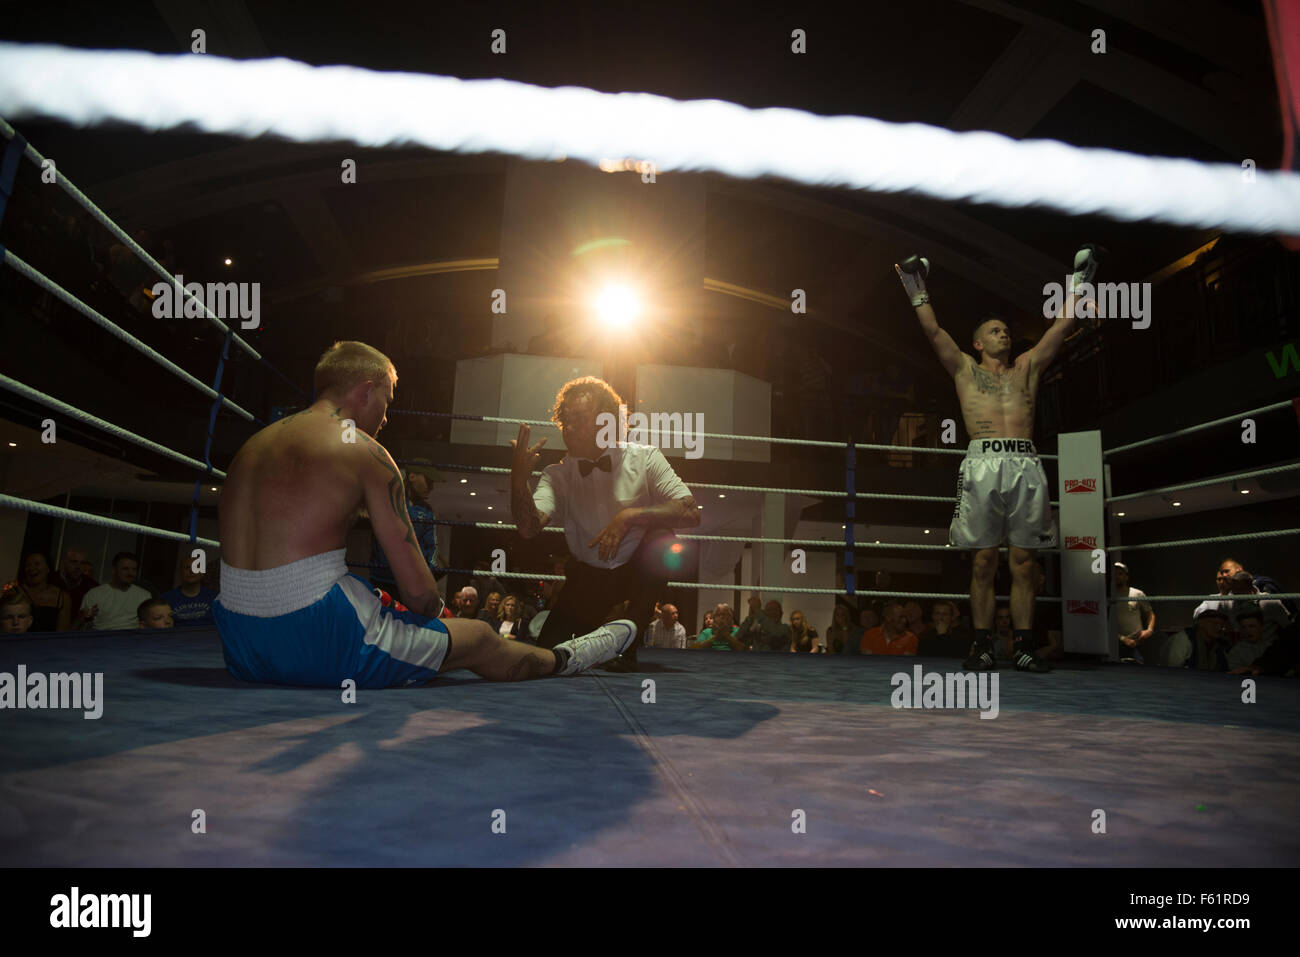 Un boxer pro è stato abbattuto e ha un conteggio di arbitro, Victor con "power" scritto sul suo shorts solleva le braccia Foto Stock